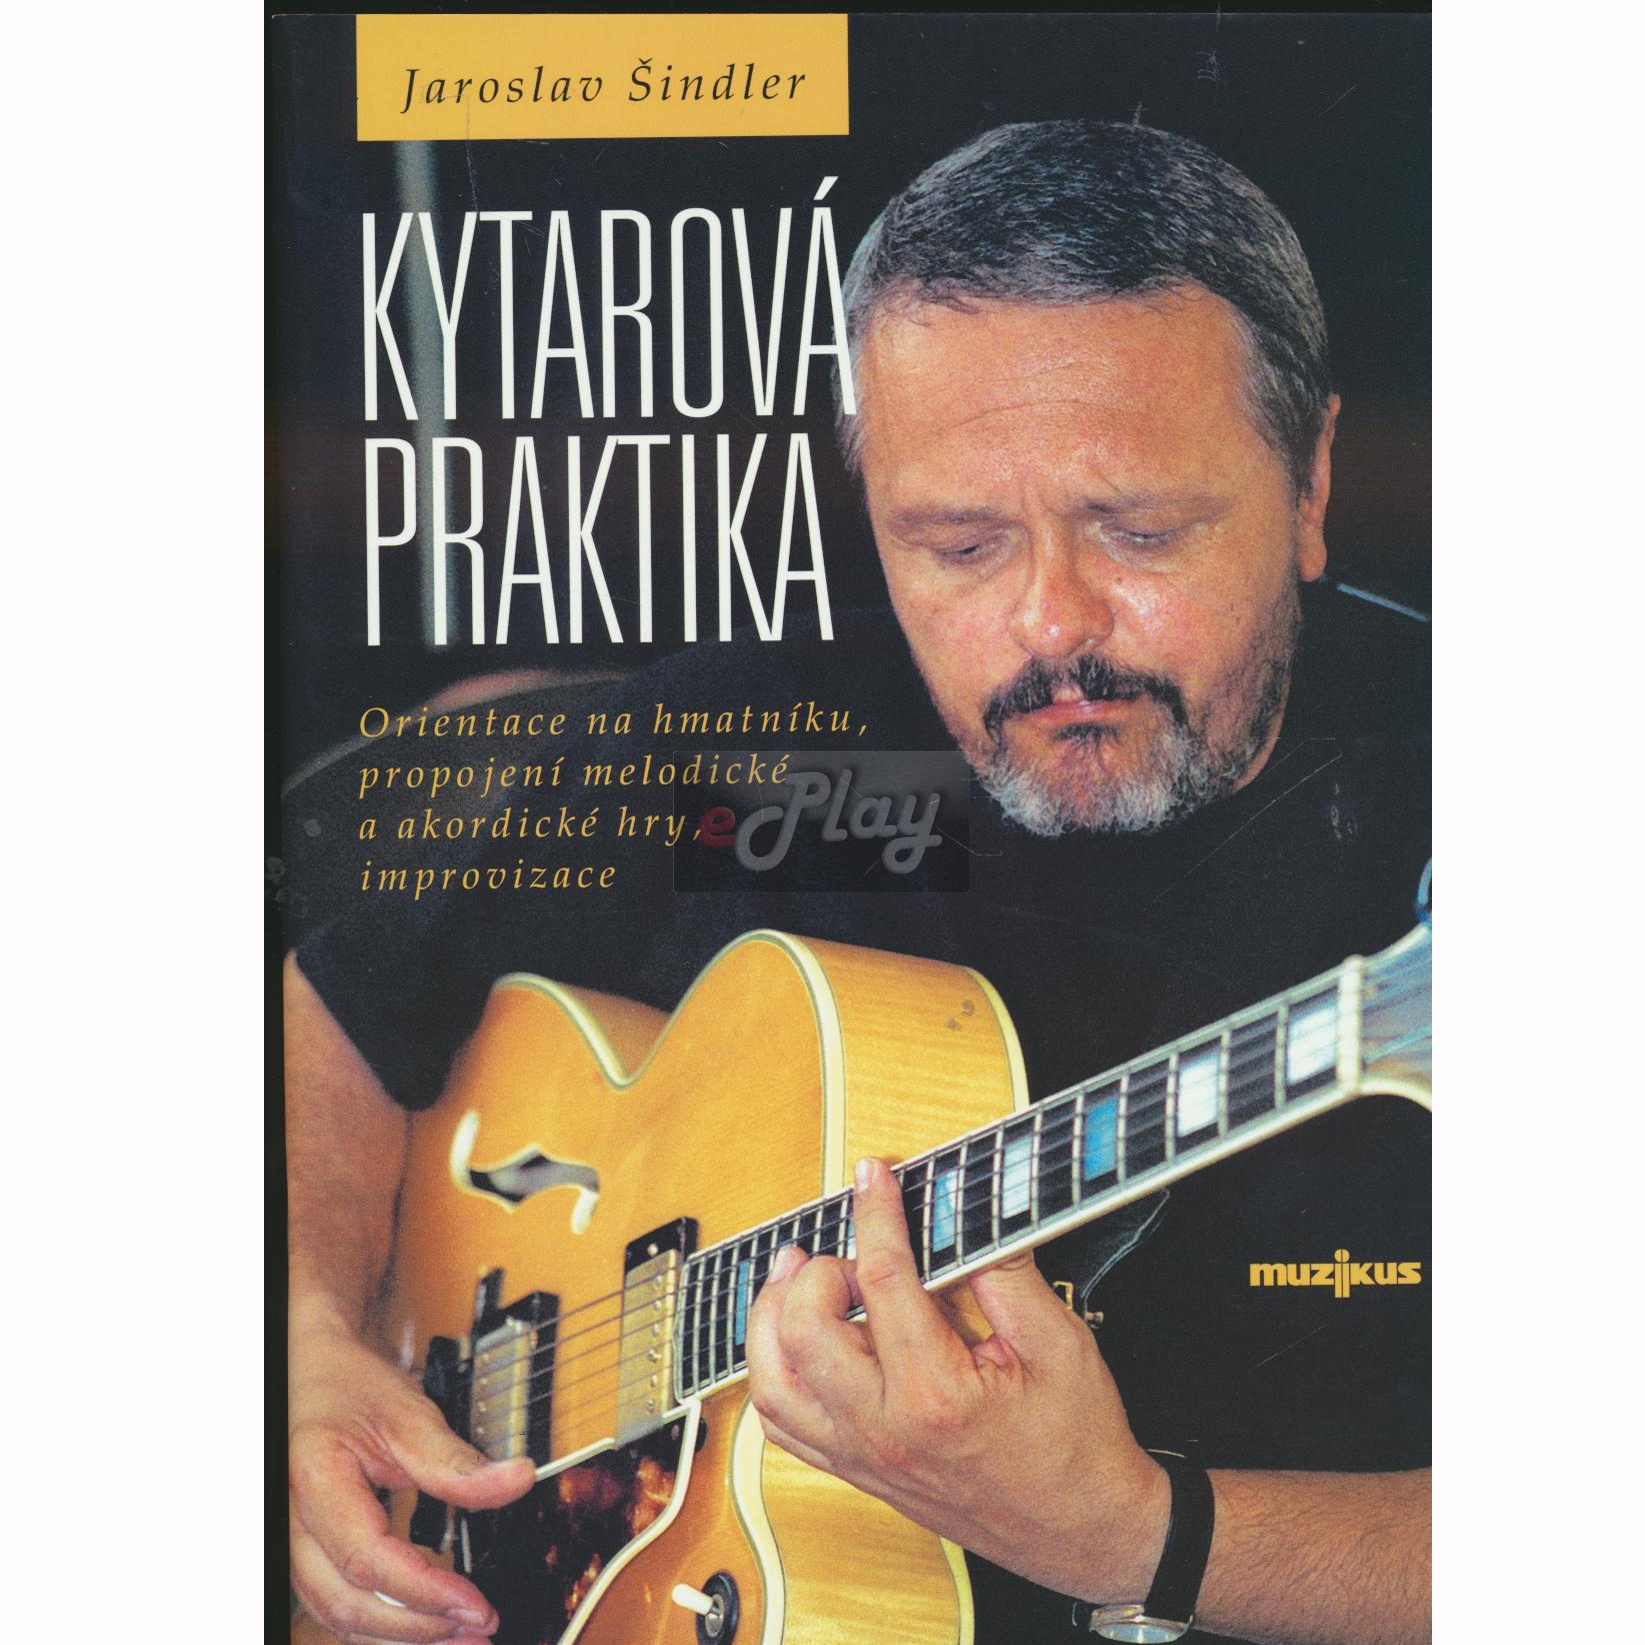 Jaroslav Šindler - Kytarová praktika     | Obrázok 1 | eplay.sk